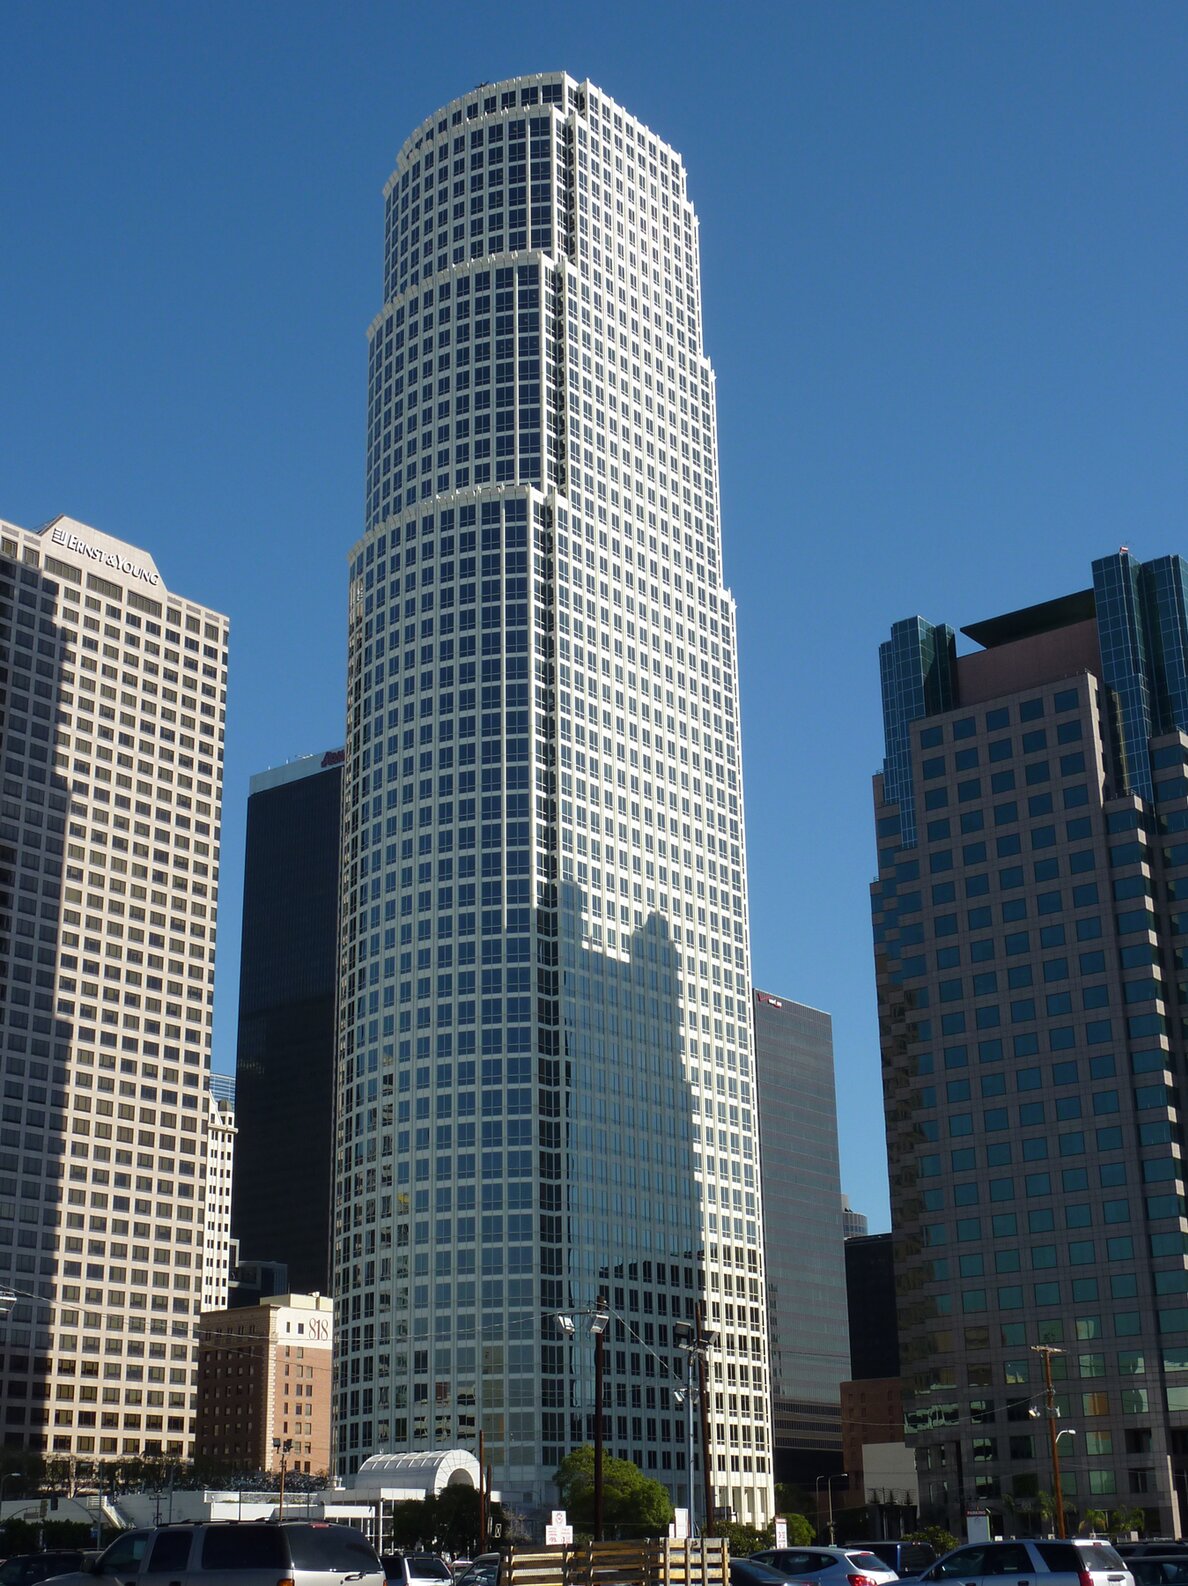 Refernzbild "777 Tower"; fassadenelemente aus Metall